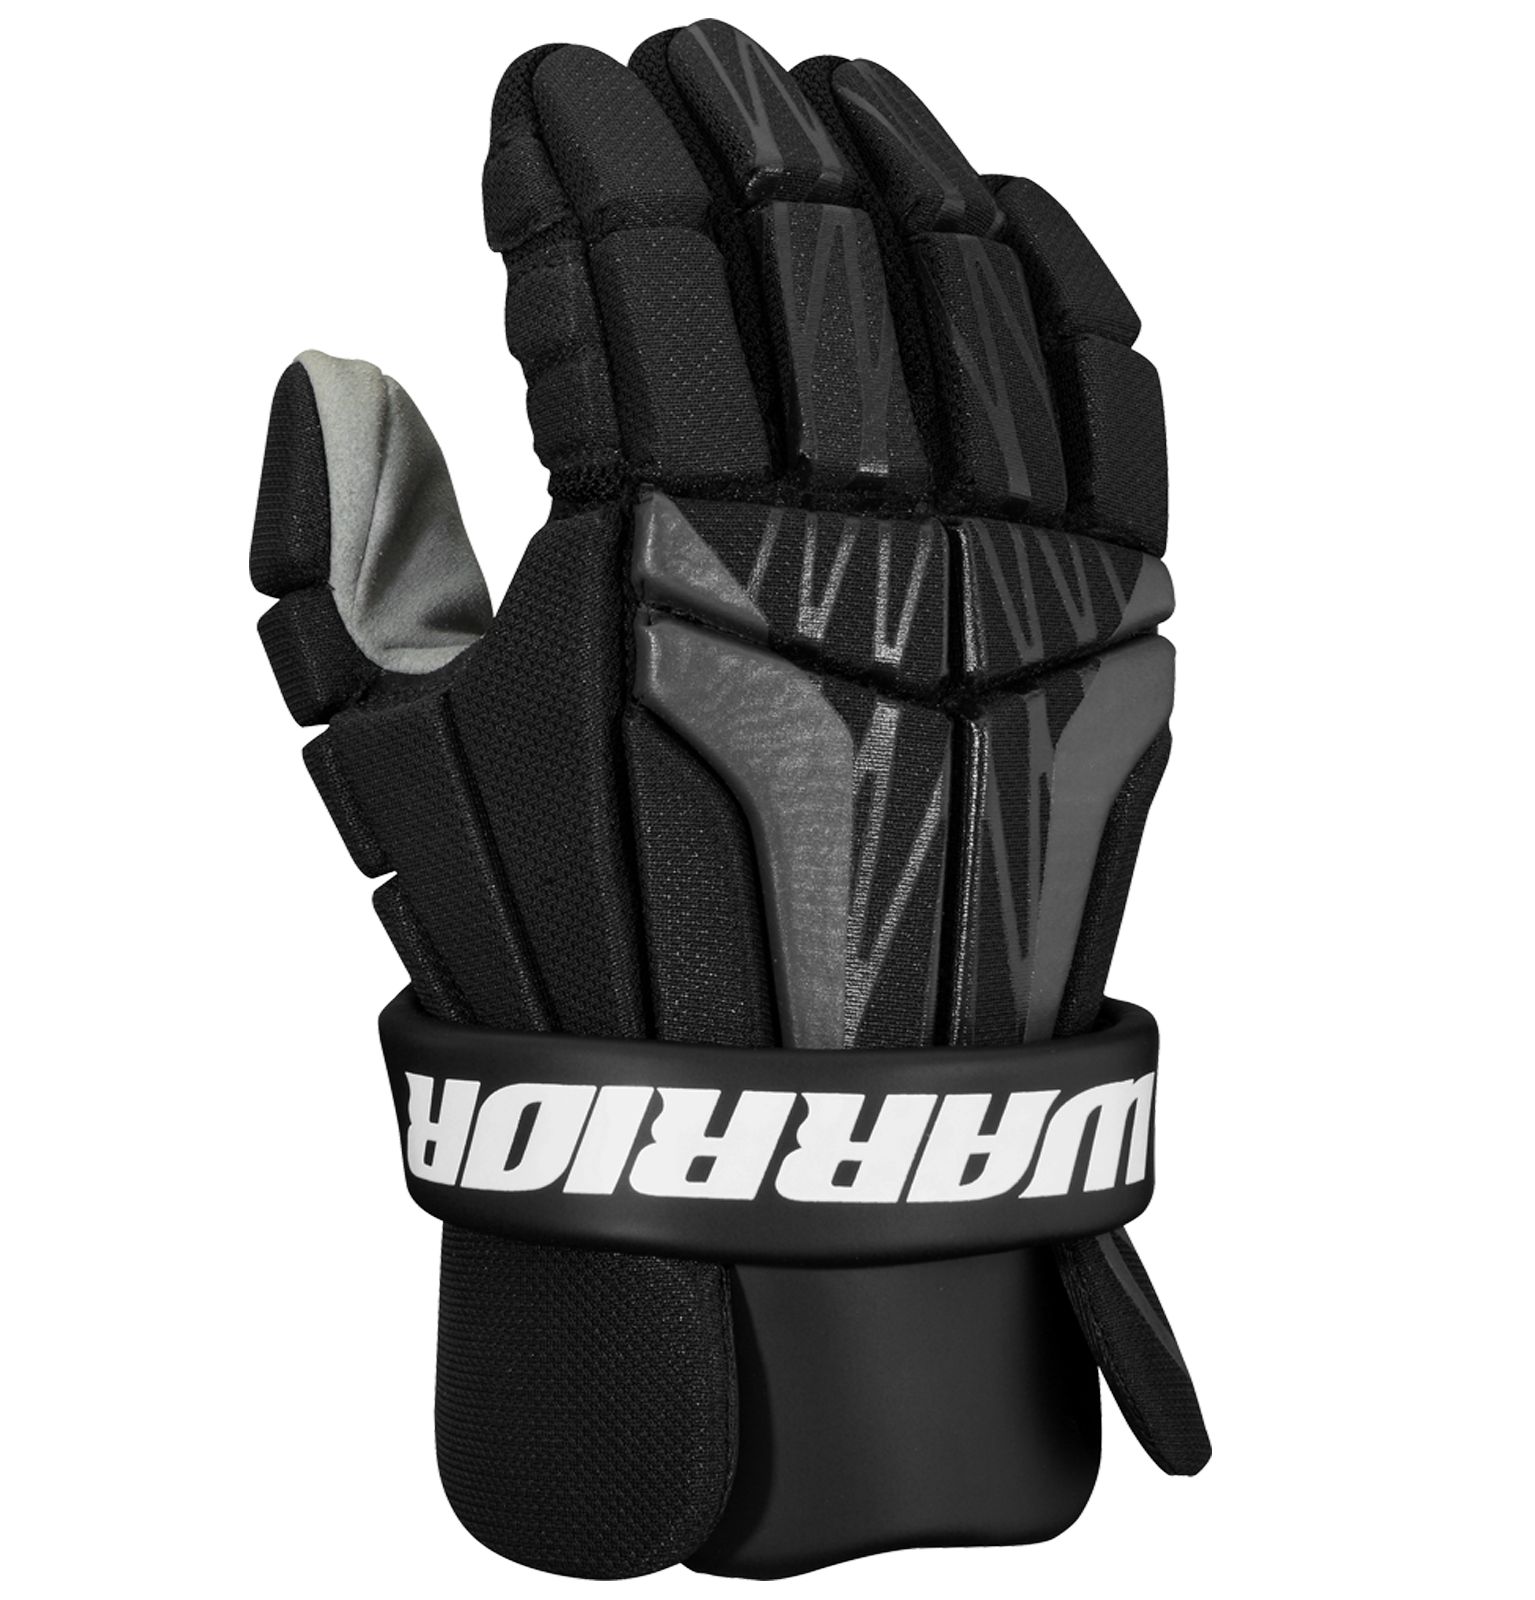 Burn NEXT JR Glove, Black image number 0